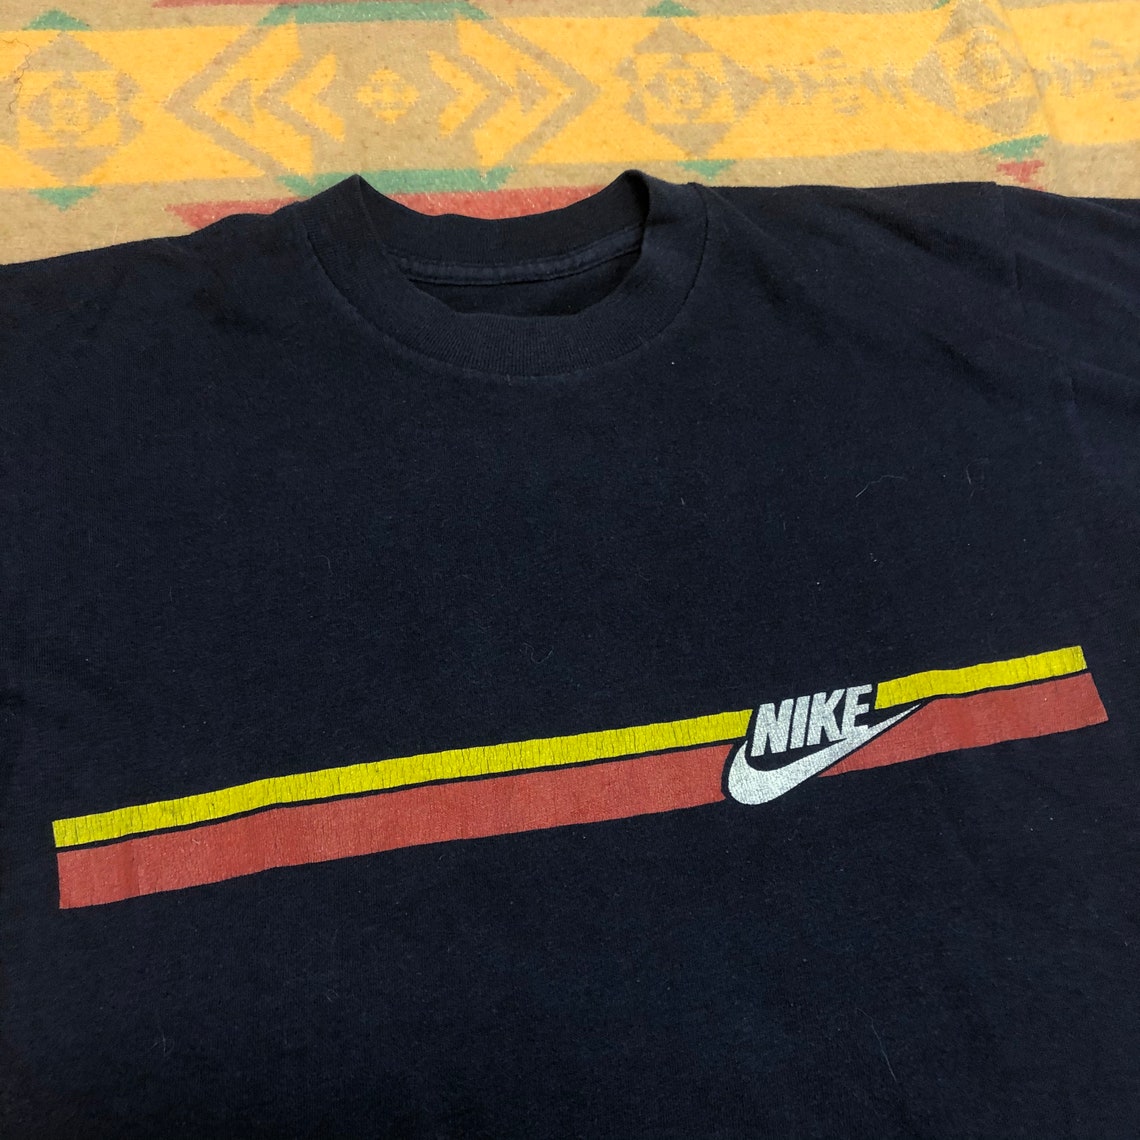 1970s Nike stripe logo navy blue t shirt vintage | Etsy